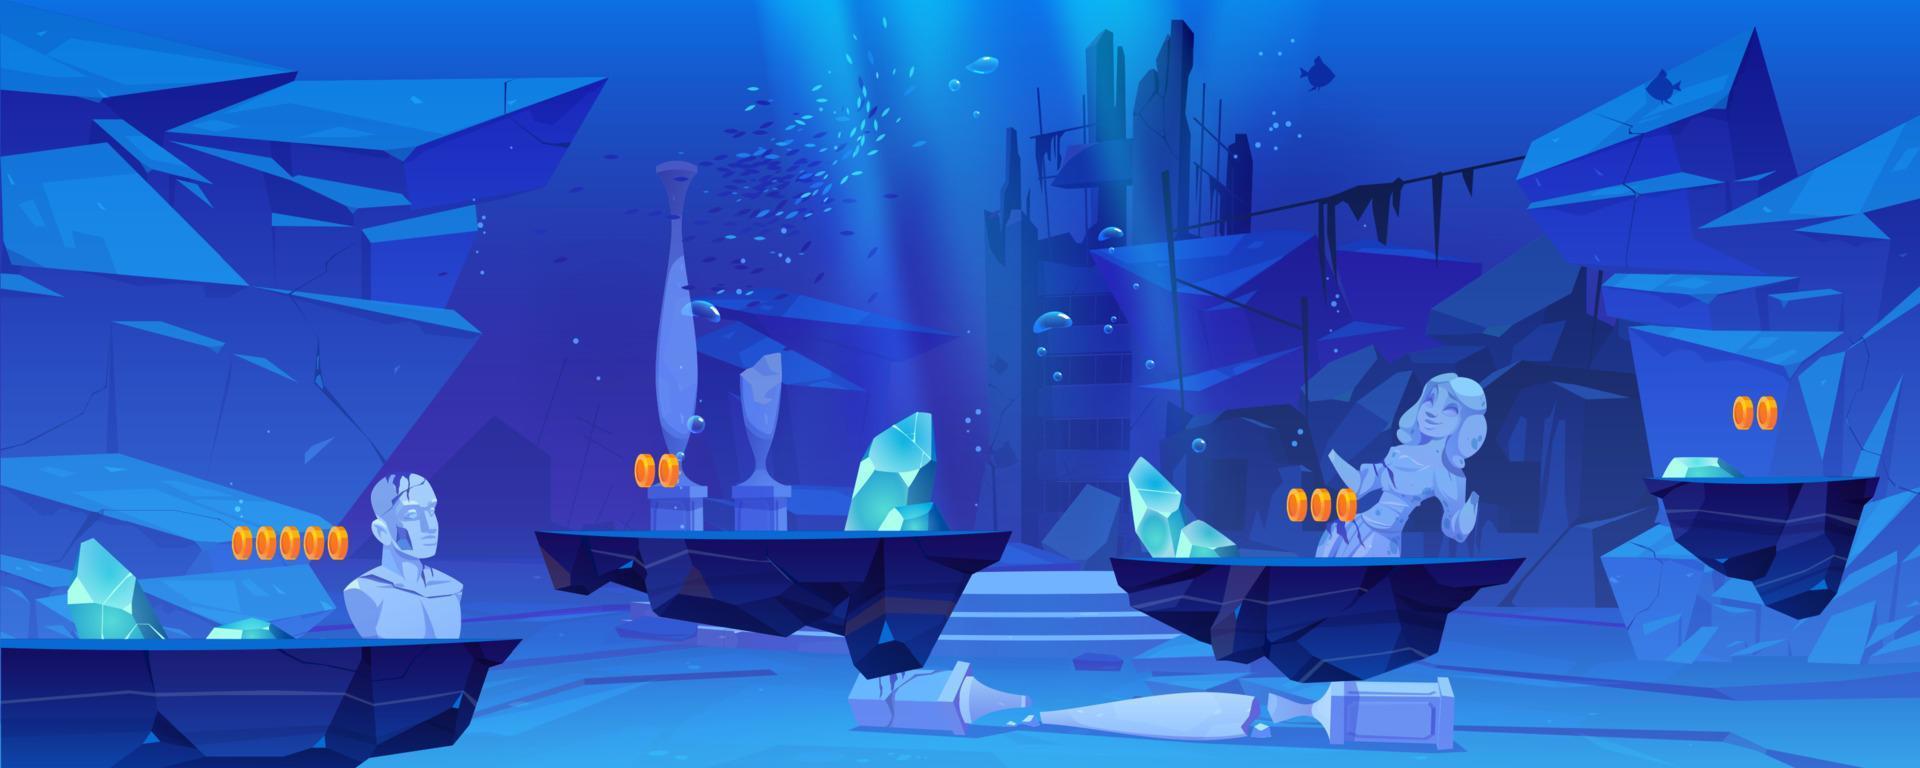 Hintergrund auf Spielebene mit Plattformen unter Wasser vektor